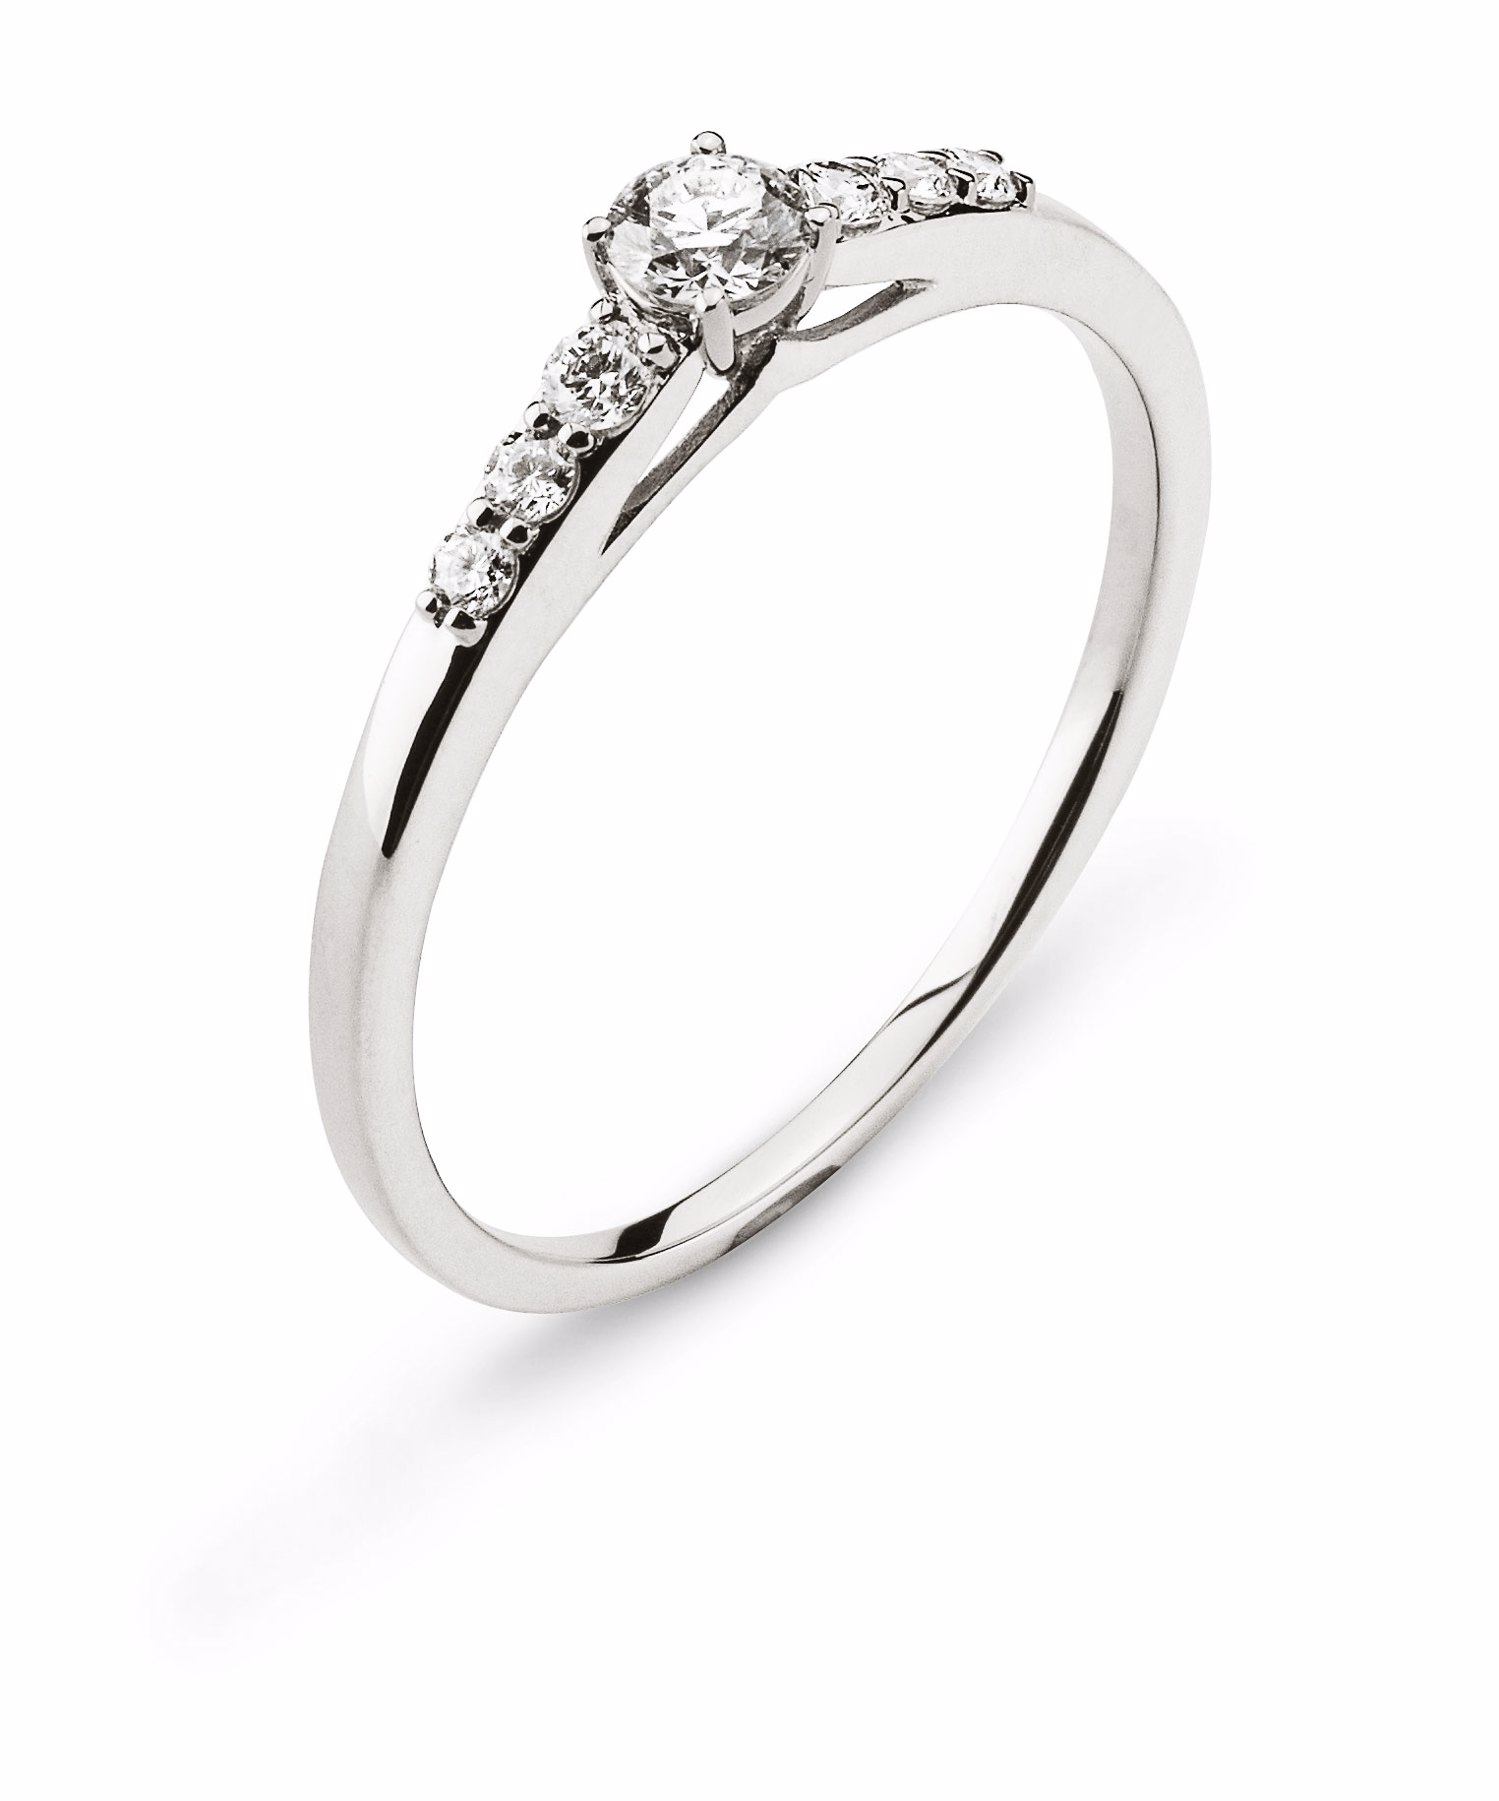 AURONOS Prestige Ring Weissgold 18K Diamanten 0.25ct